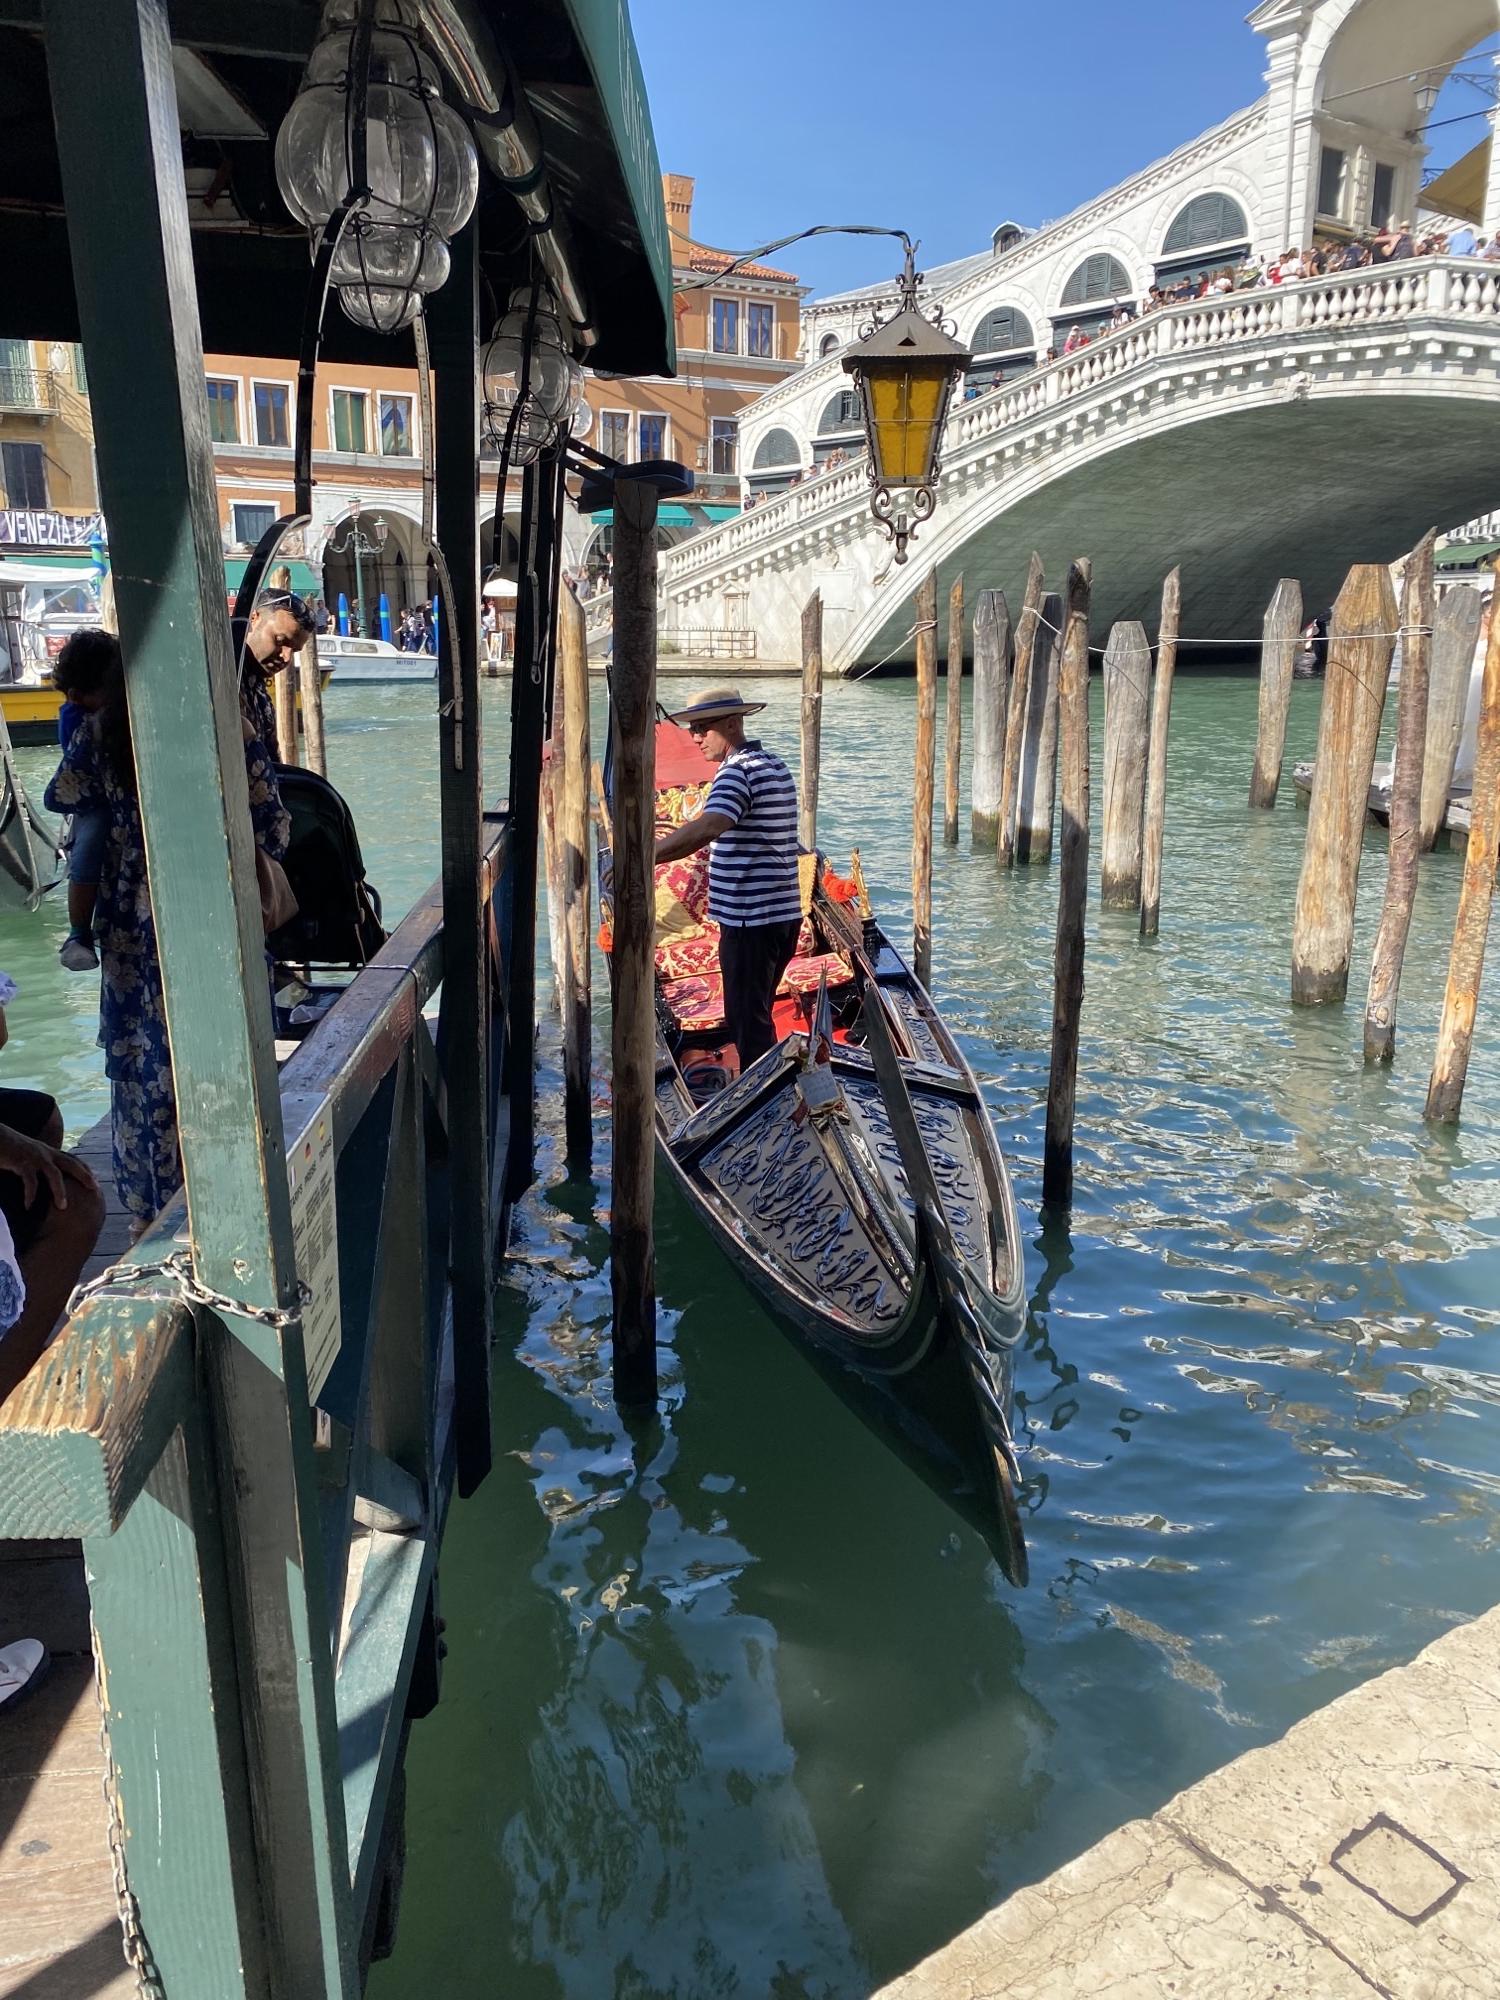 Gondolieeri otti kyytiläisiä Rialton sillan kupeessa Venetsiassa.